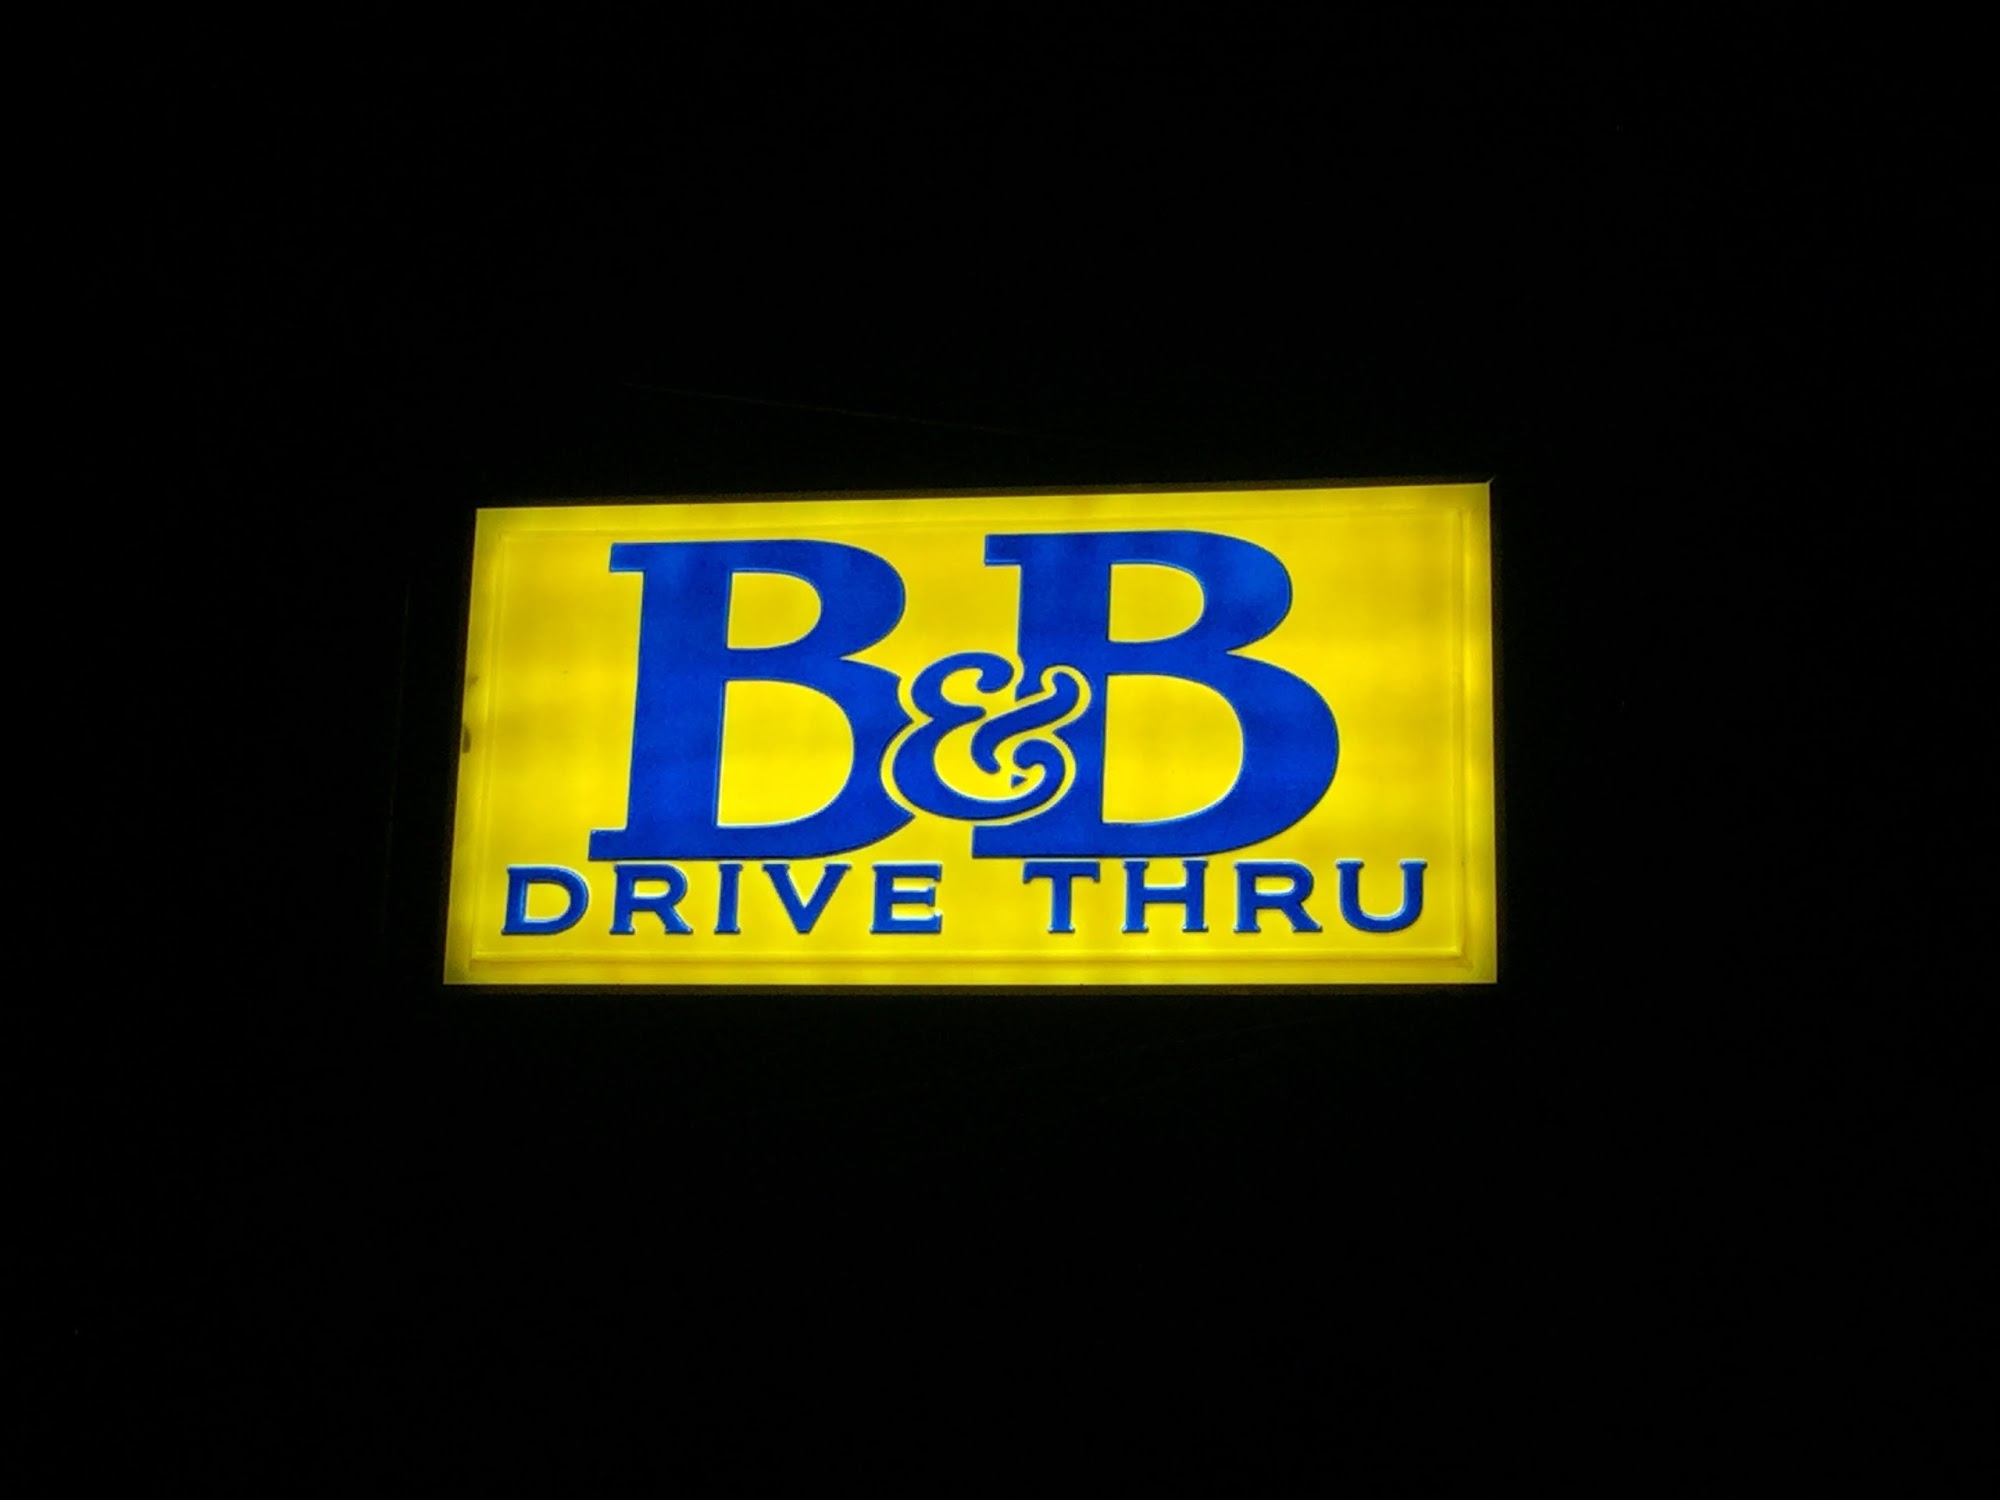 B&B Drive Thru